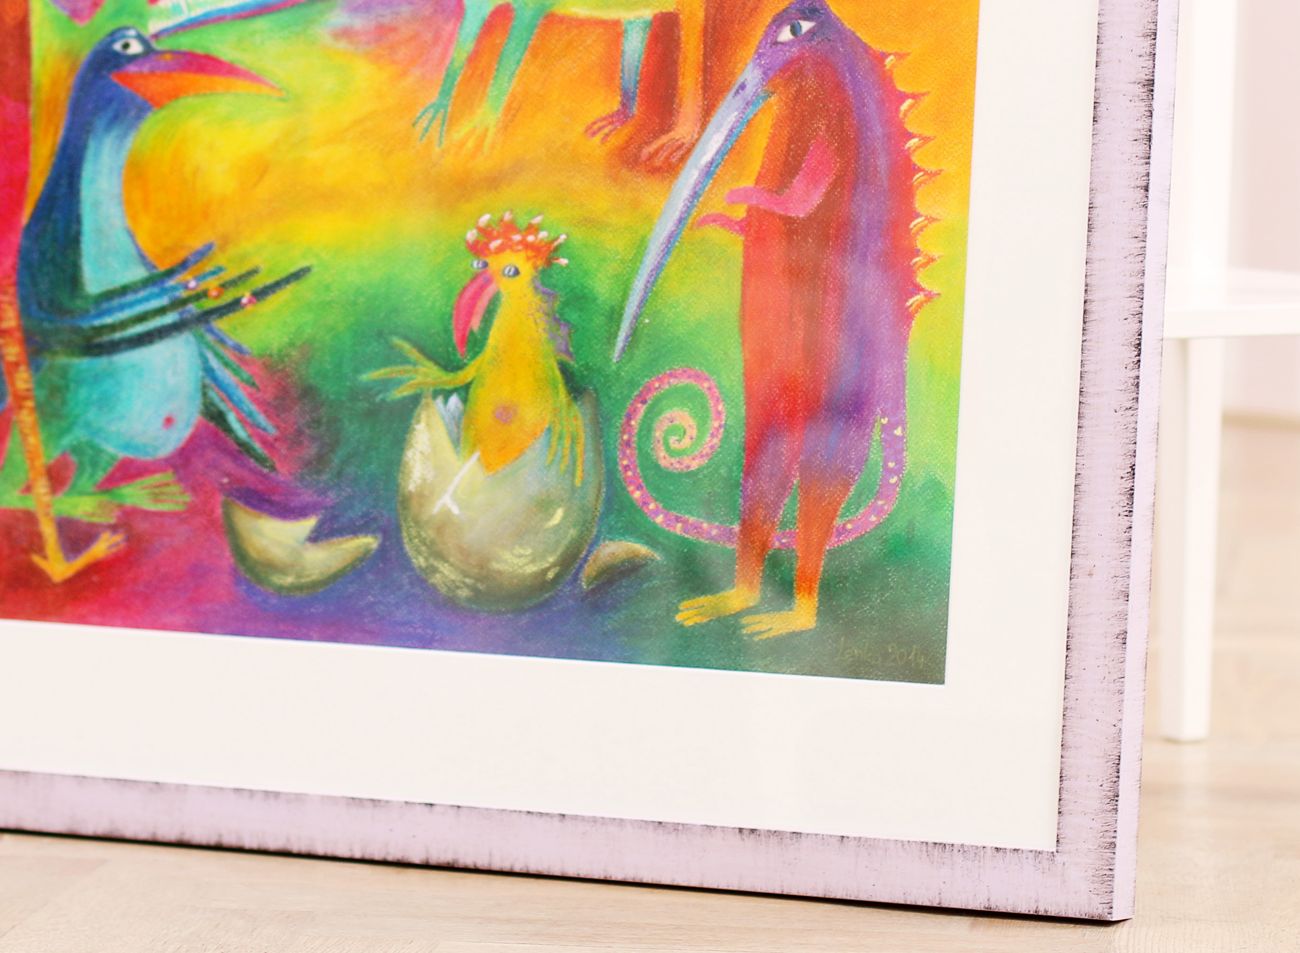  Dětský pastel na papíře ve fialovém rámu | © Frameit.cz